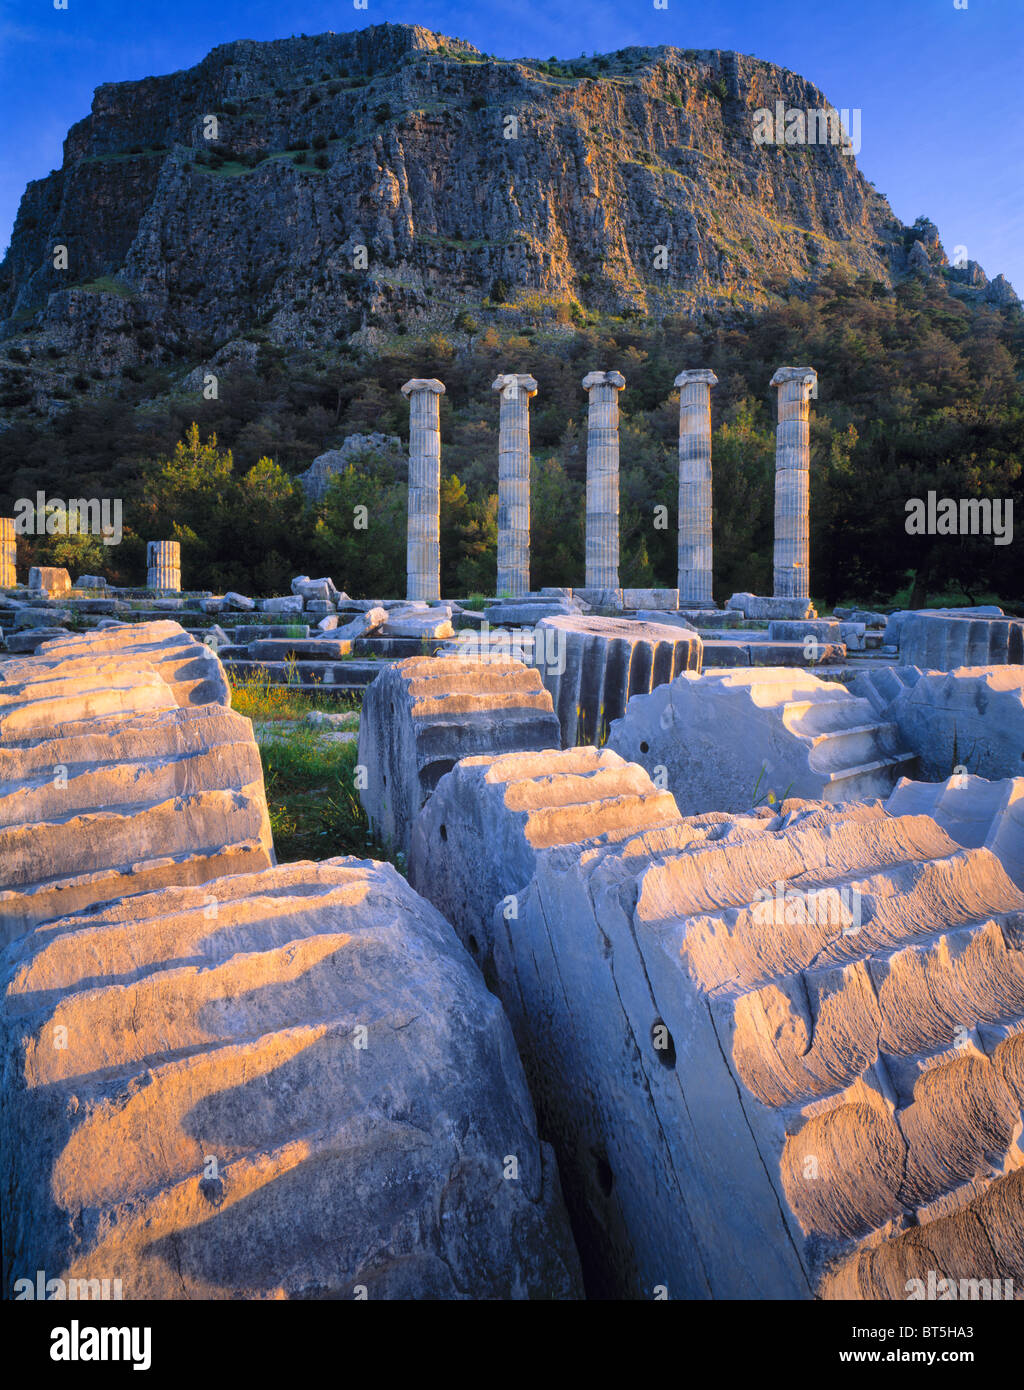 Tempel der Athena in Priene, Ägäis, Türkei, griechische Ruinen von 350 v. Chr., erbaut von dem Architekten Pytheos, Sunrise Stockfoto